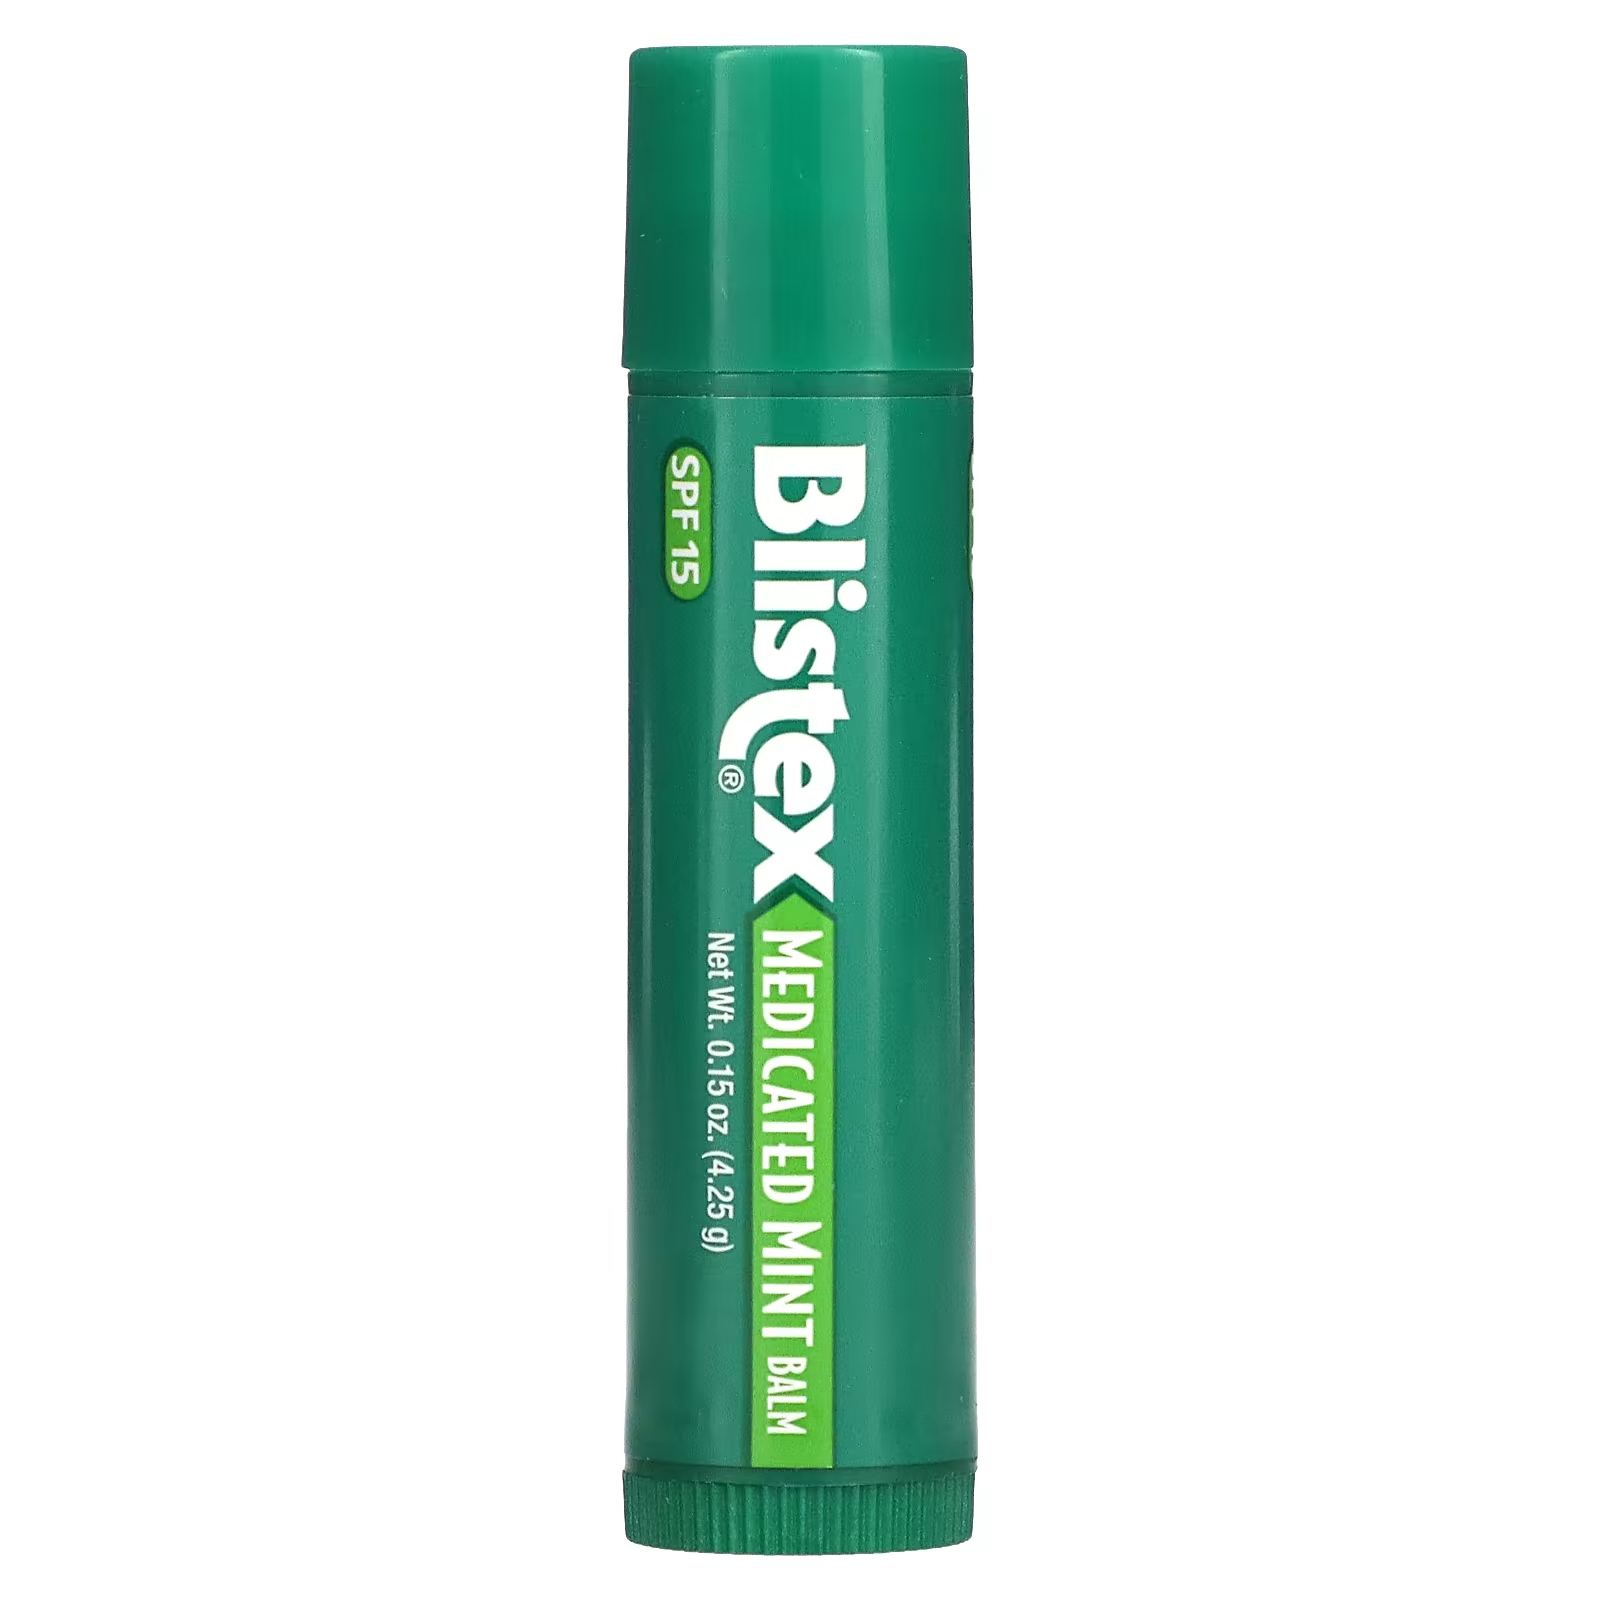 Blistex Лекарственное средство для защиты губ/солнцезащитное средство SPF 15, мятное, 0,15 унции (4,25 г)